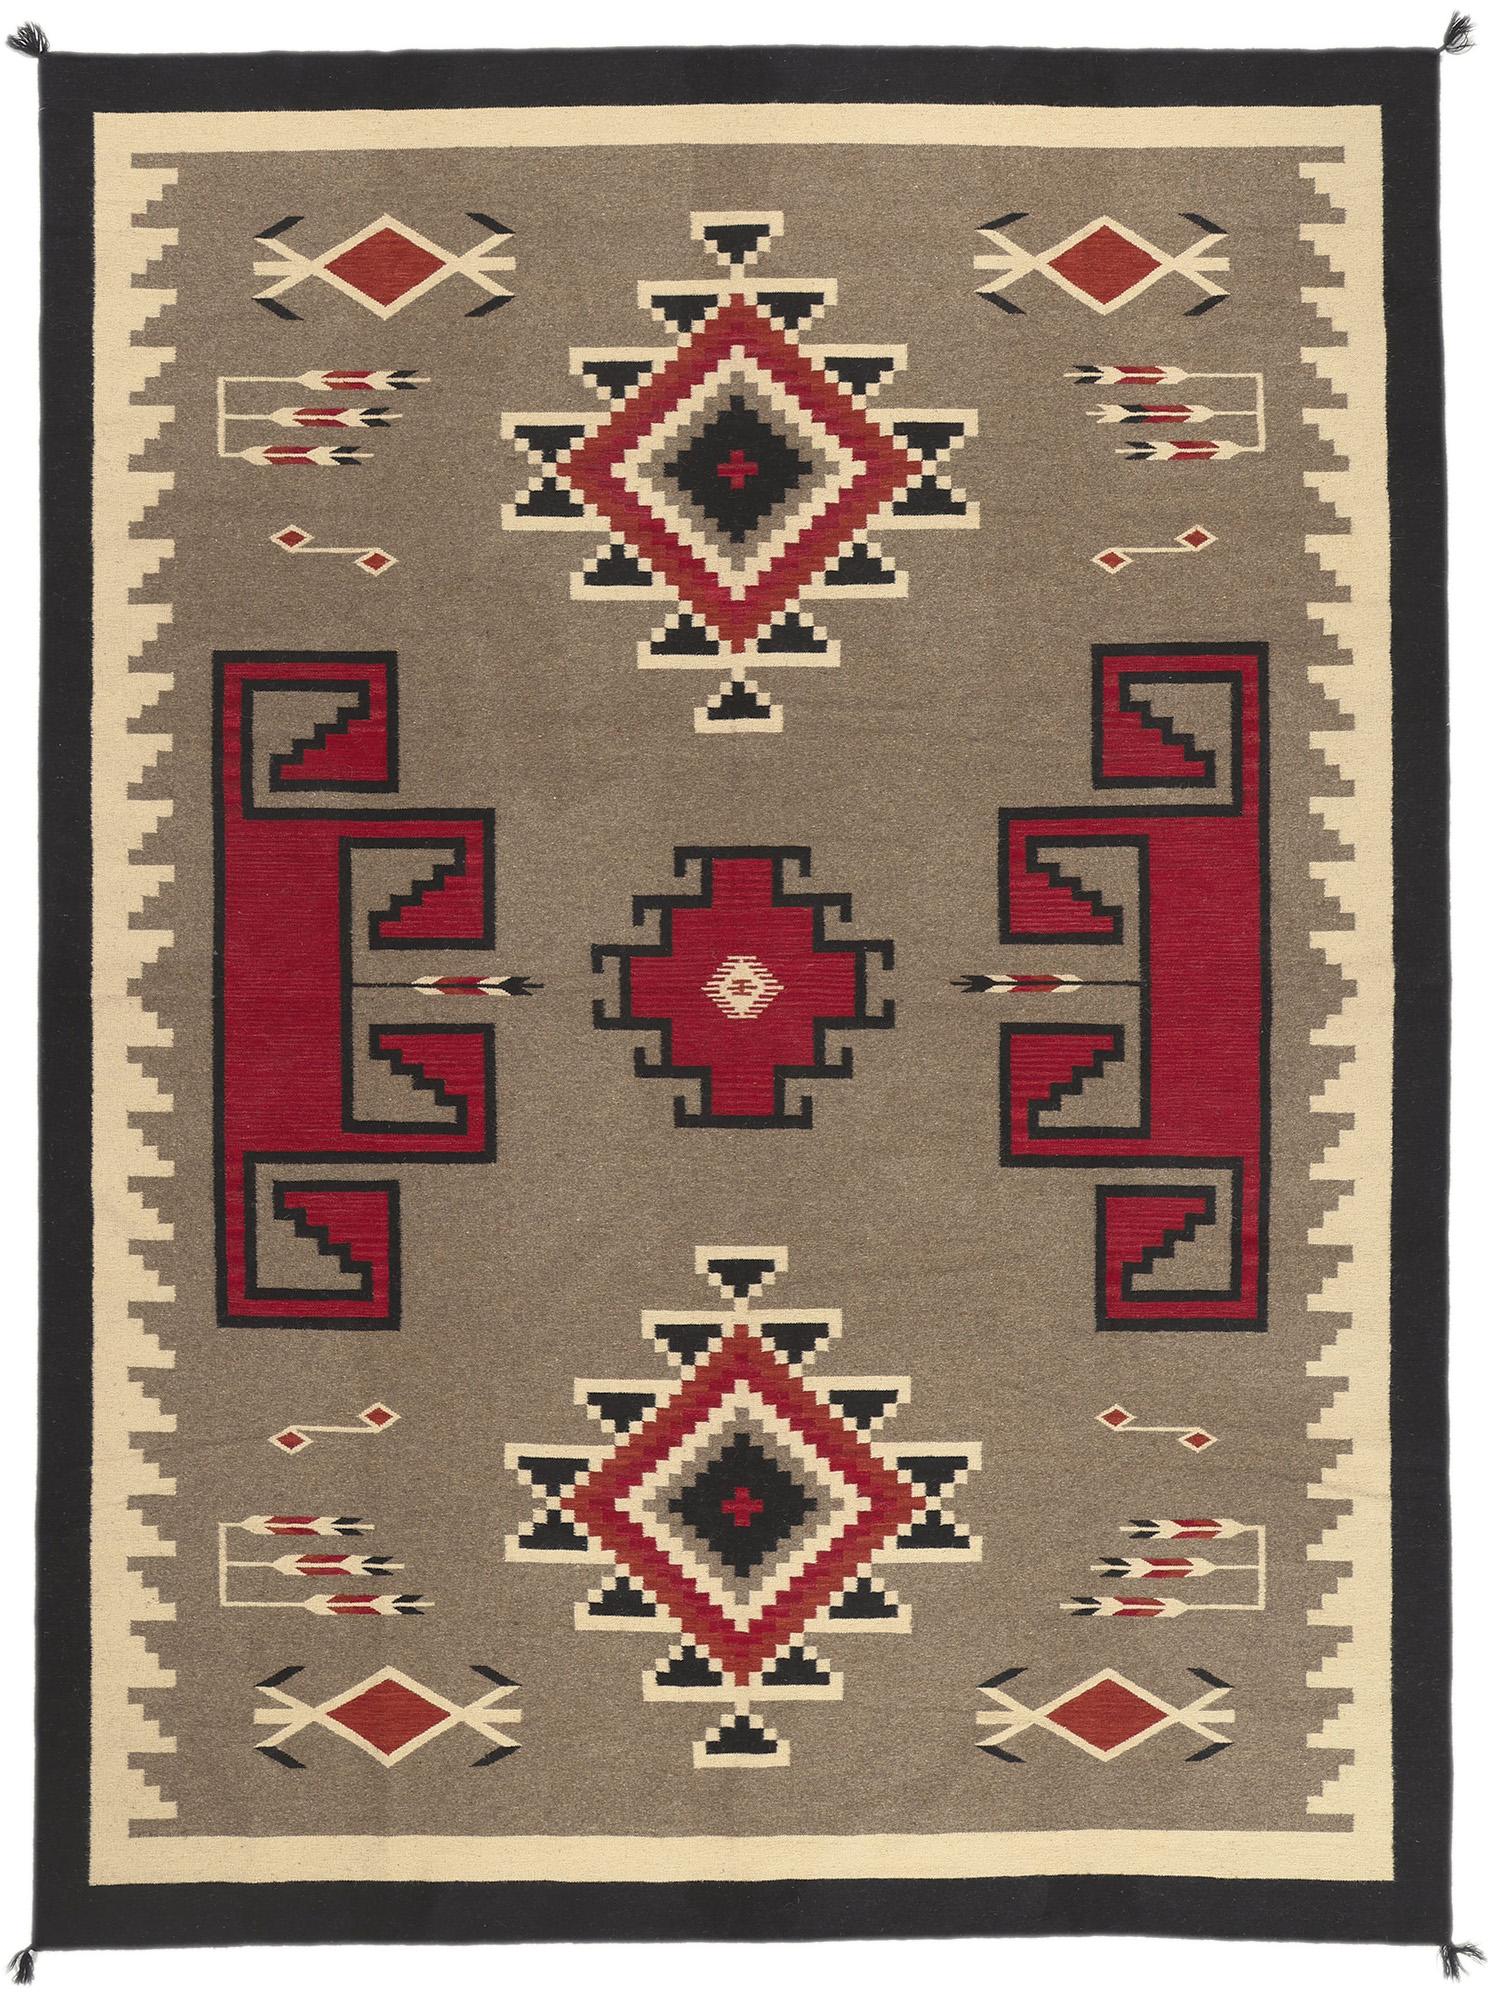 Contemporary Santa Fe Southwest Modern Teec Nos Pos Navajo-Style Rug